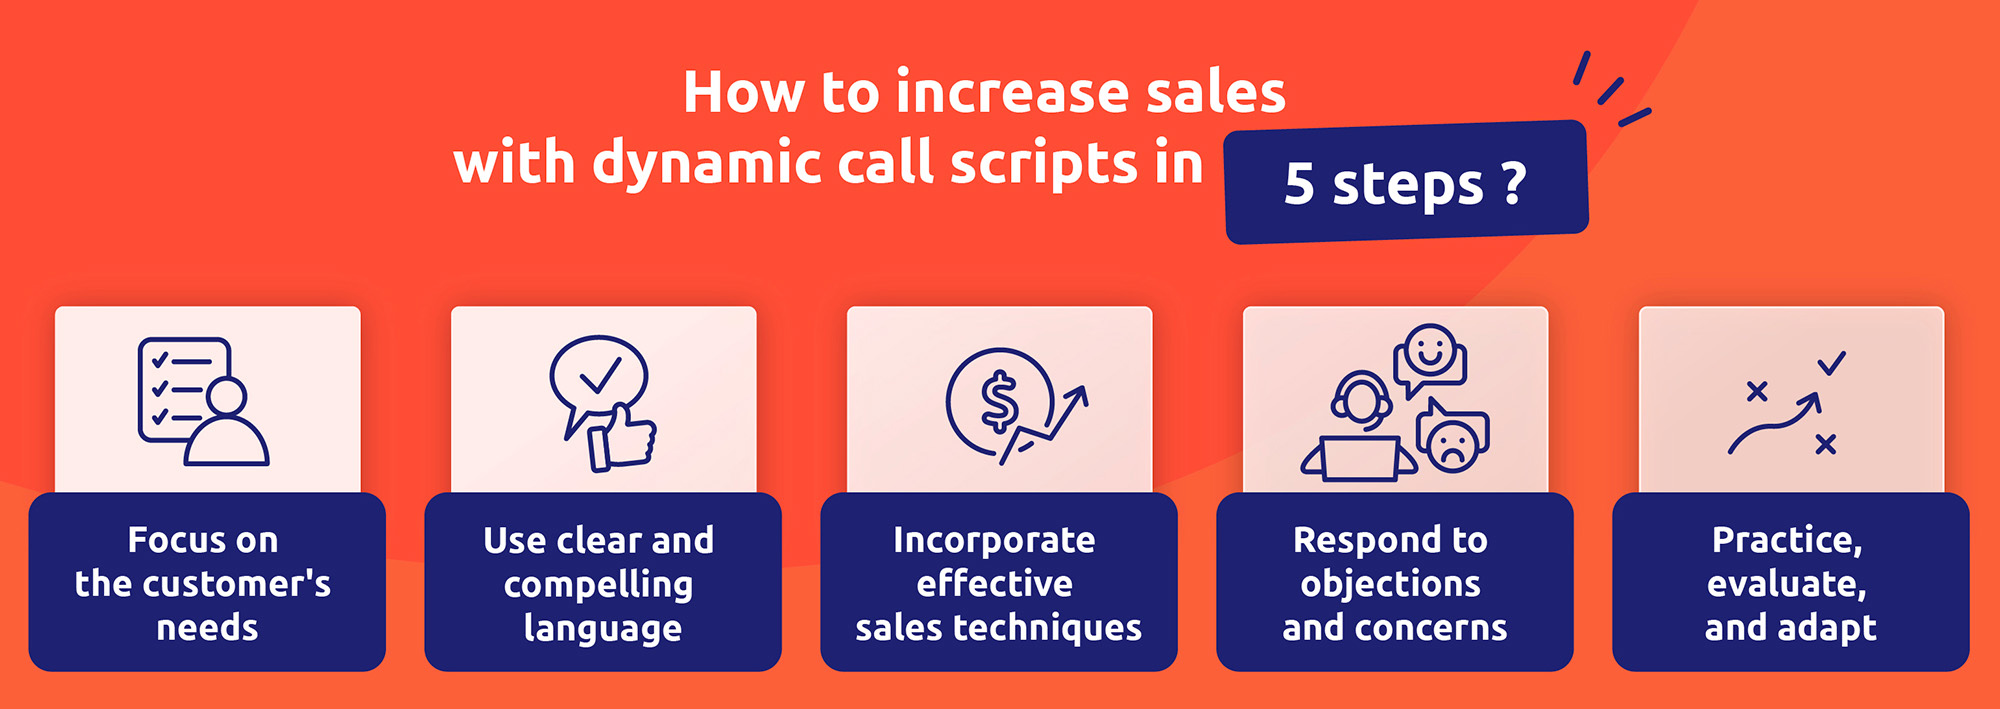 Wie kann man mit dynamischen Anrufskripten in 5 Schritten den Umsatz steigern?